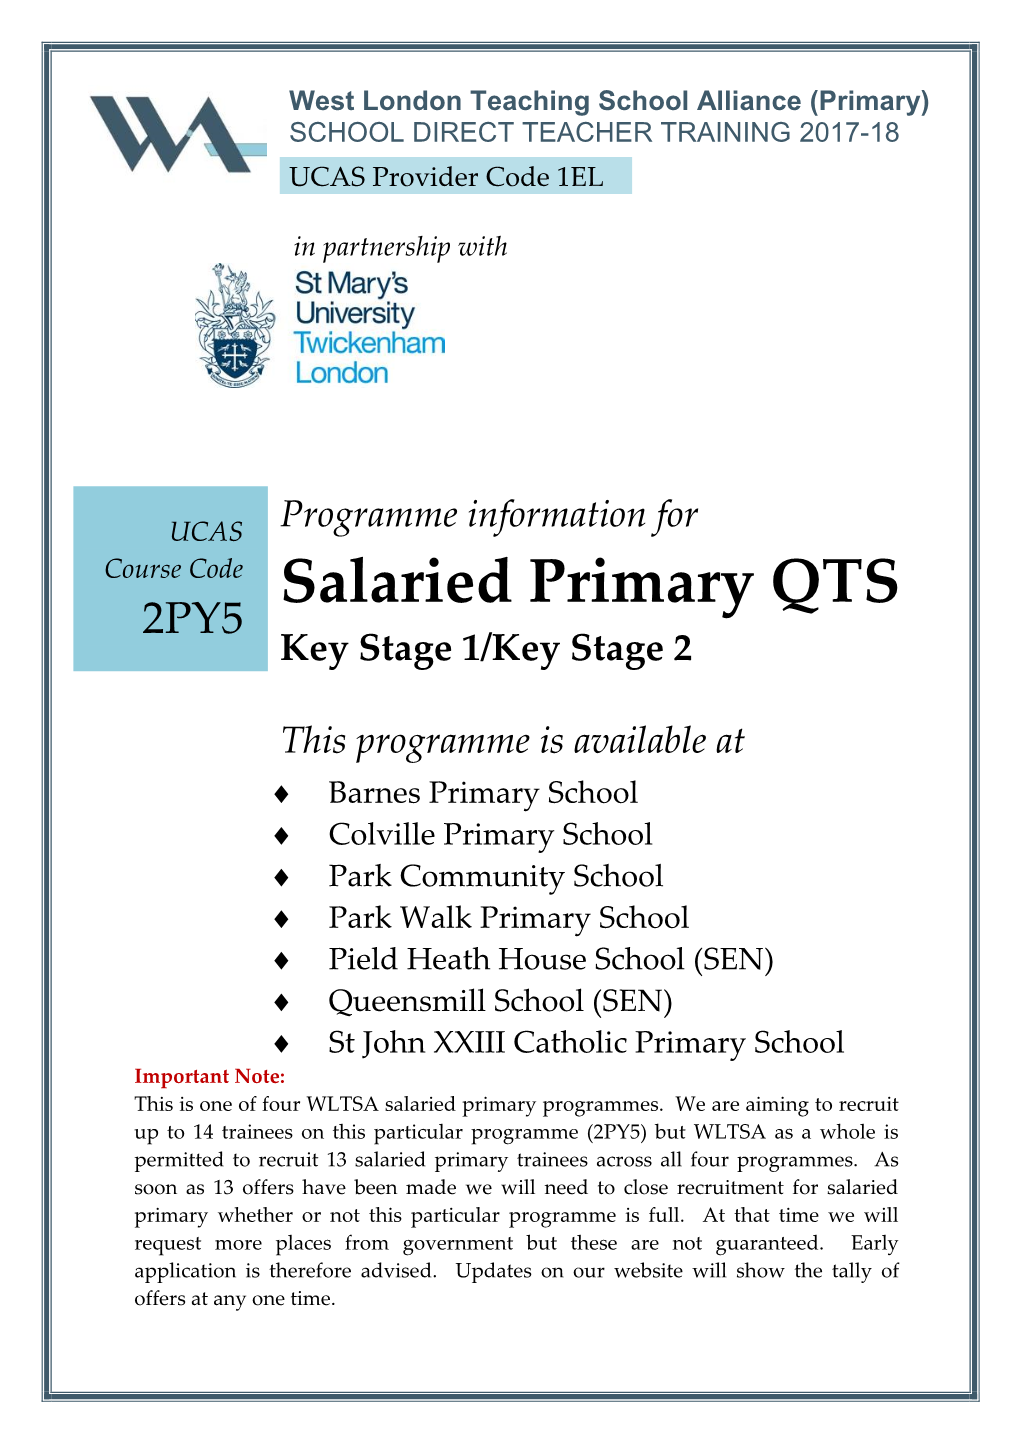 Salaried Primary QTS 2PY5 Key Stage 1/Key Stage 2